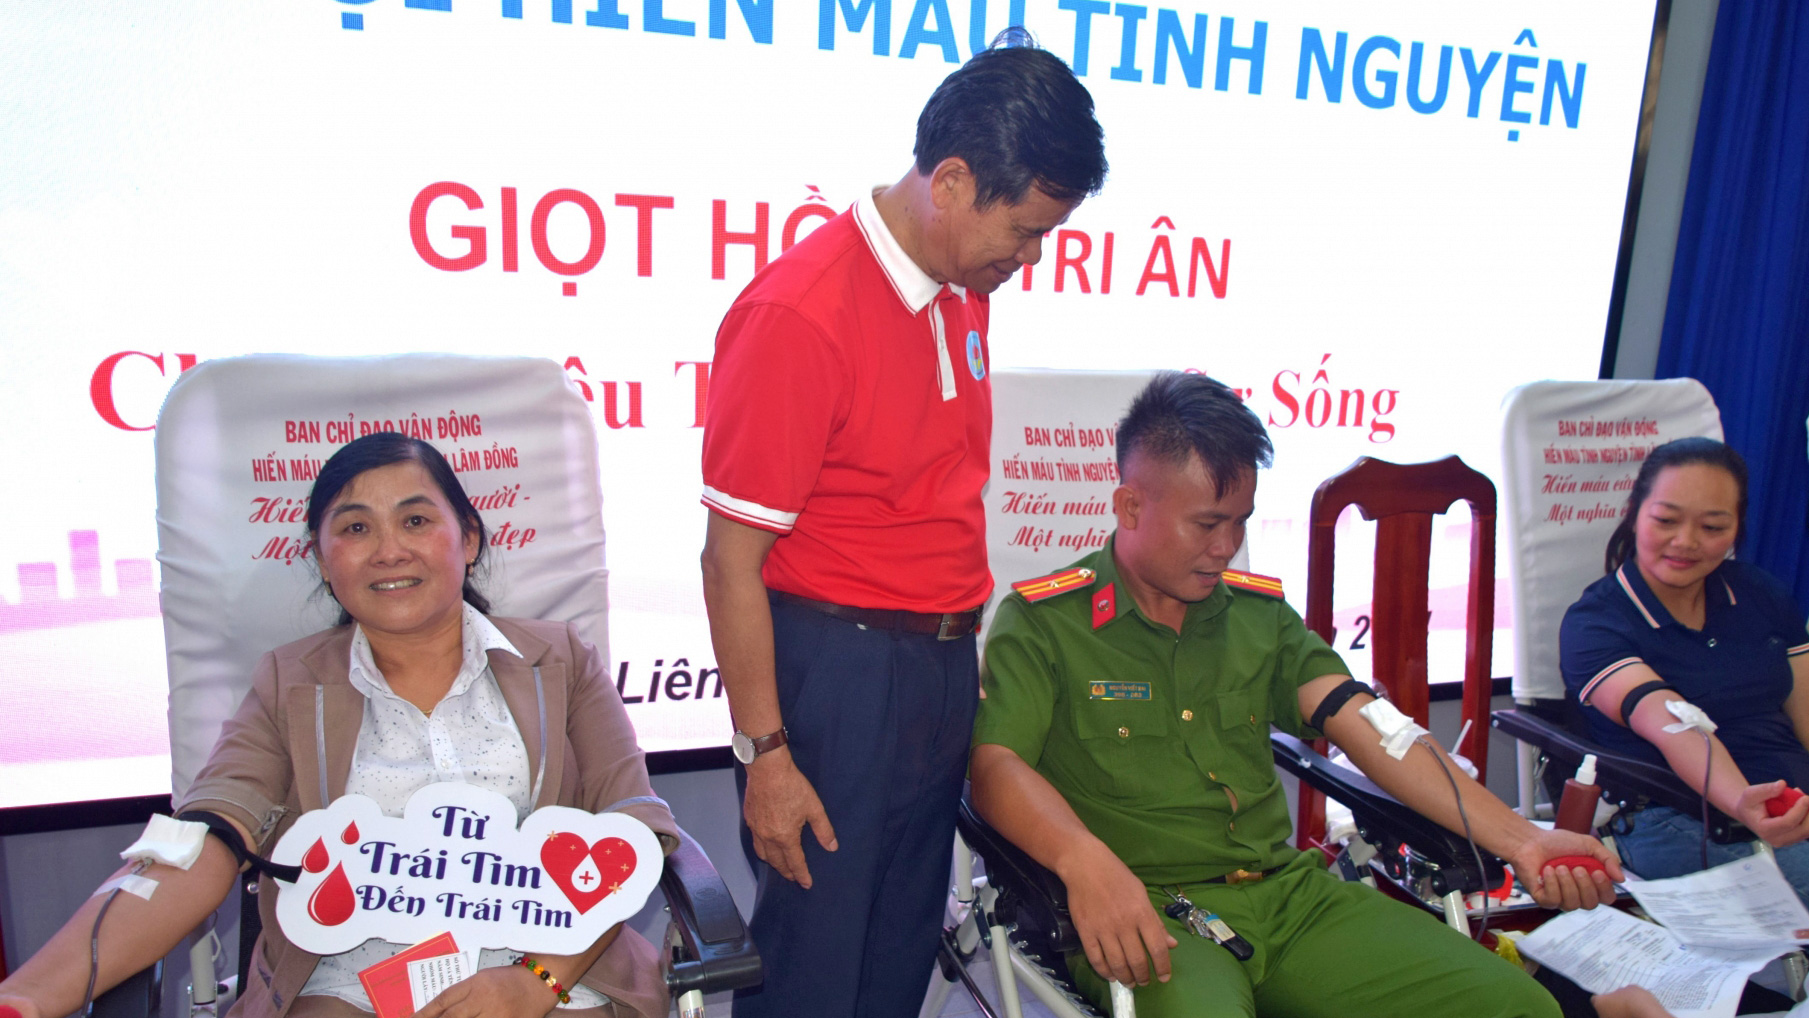 Ông Nguyễn Quang Minh - Chủ tịch Hội Chữ thập đỏ tỉnh, động viên người tham gia hiến máu